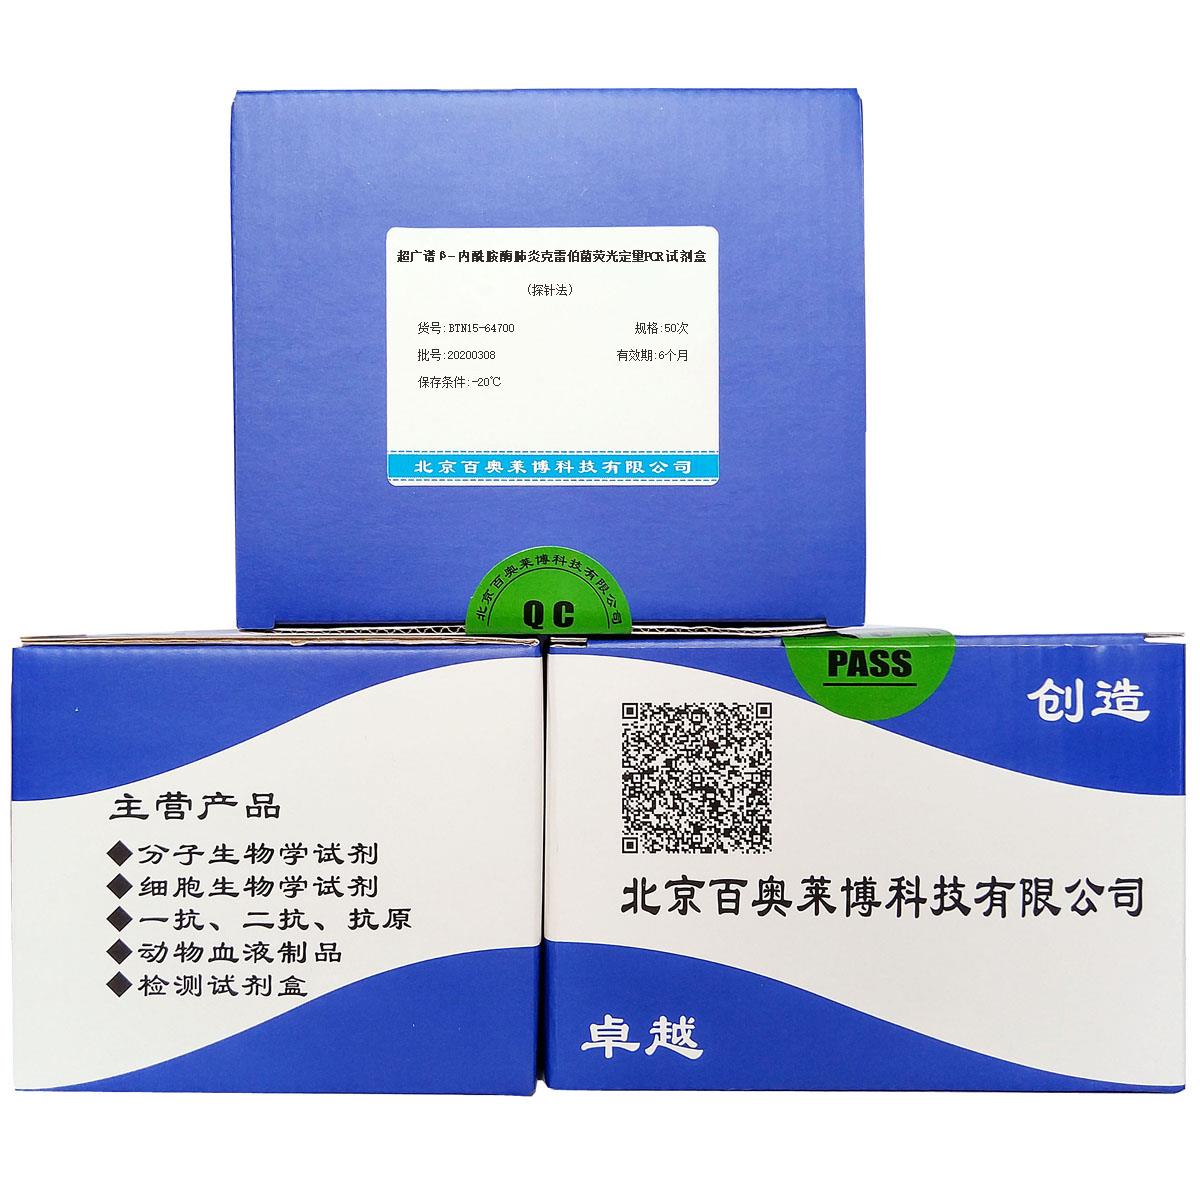 超广谱β-内酰胺酶肺炎克雷伯菌荧光定量PCR试剂盒(探针法)